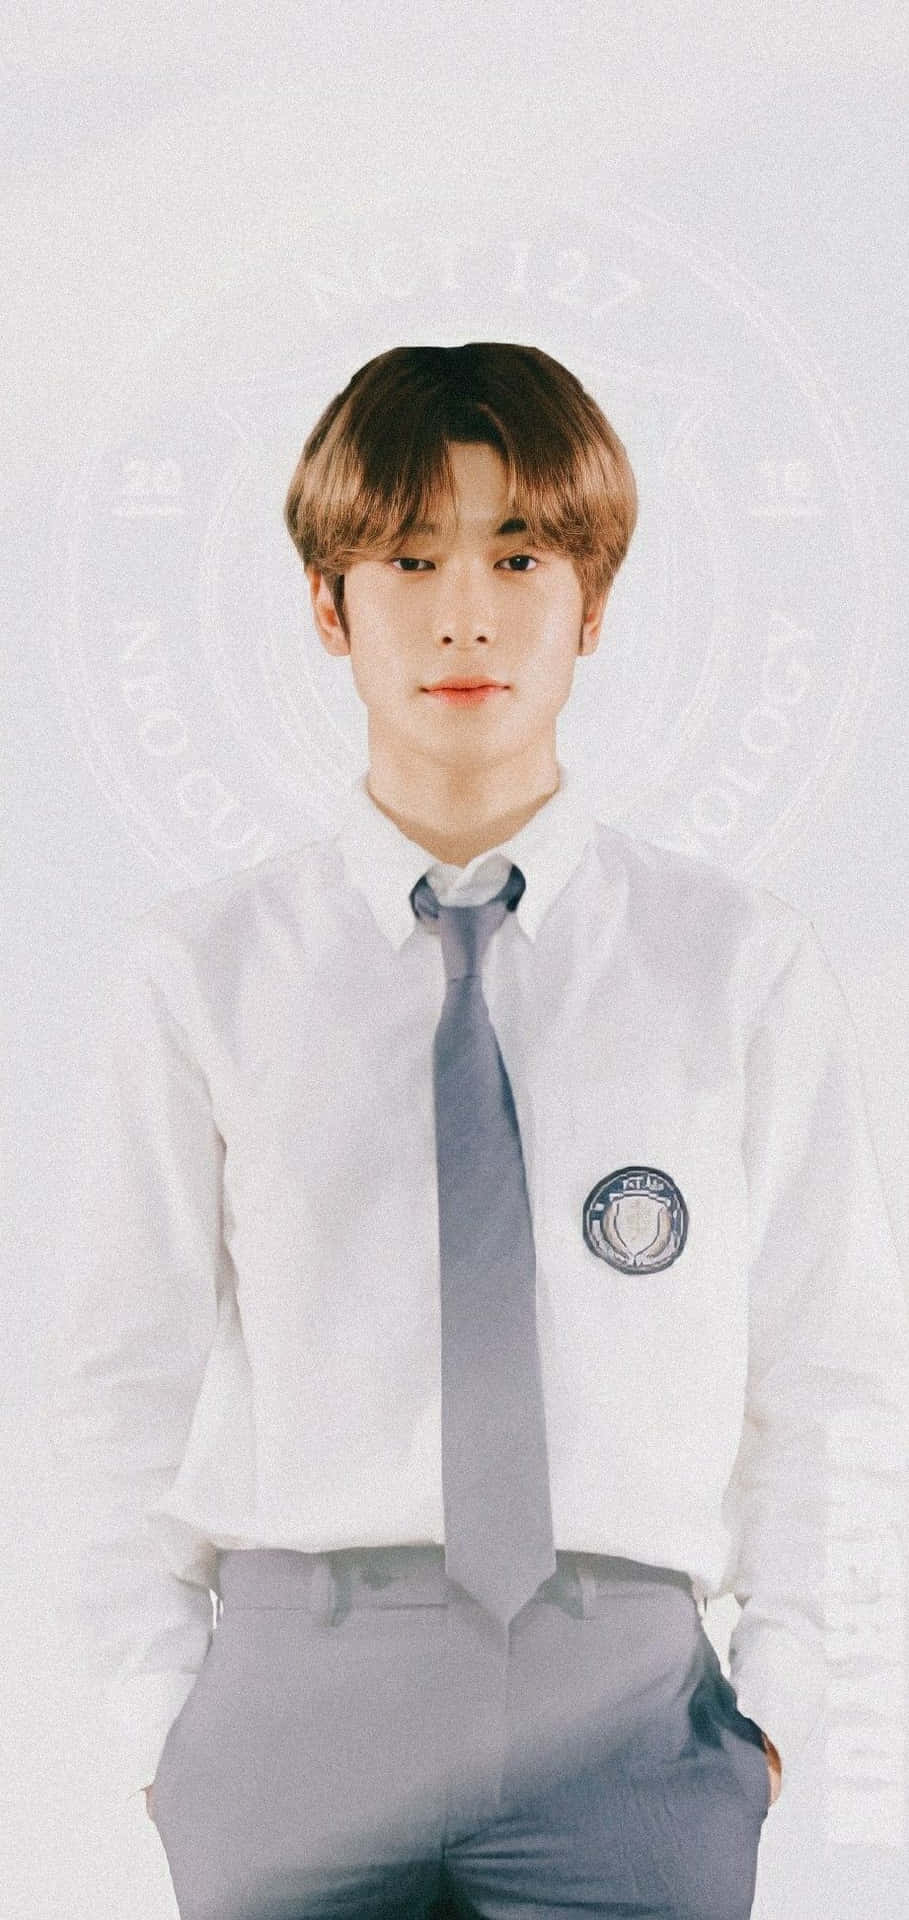 Nct Jaehyun In School Uniform Background